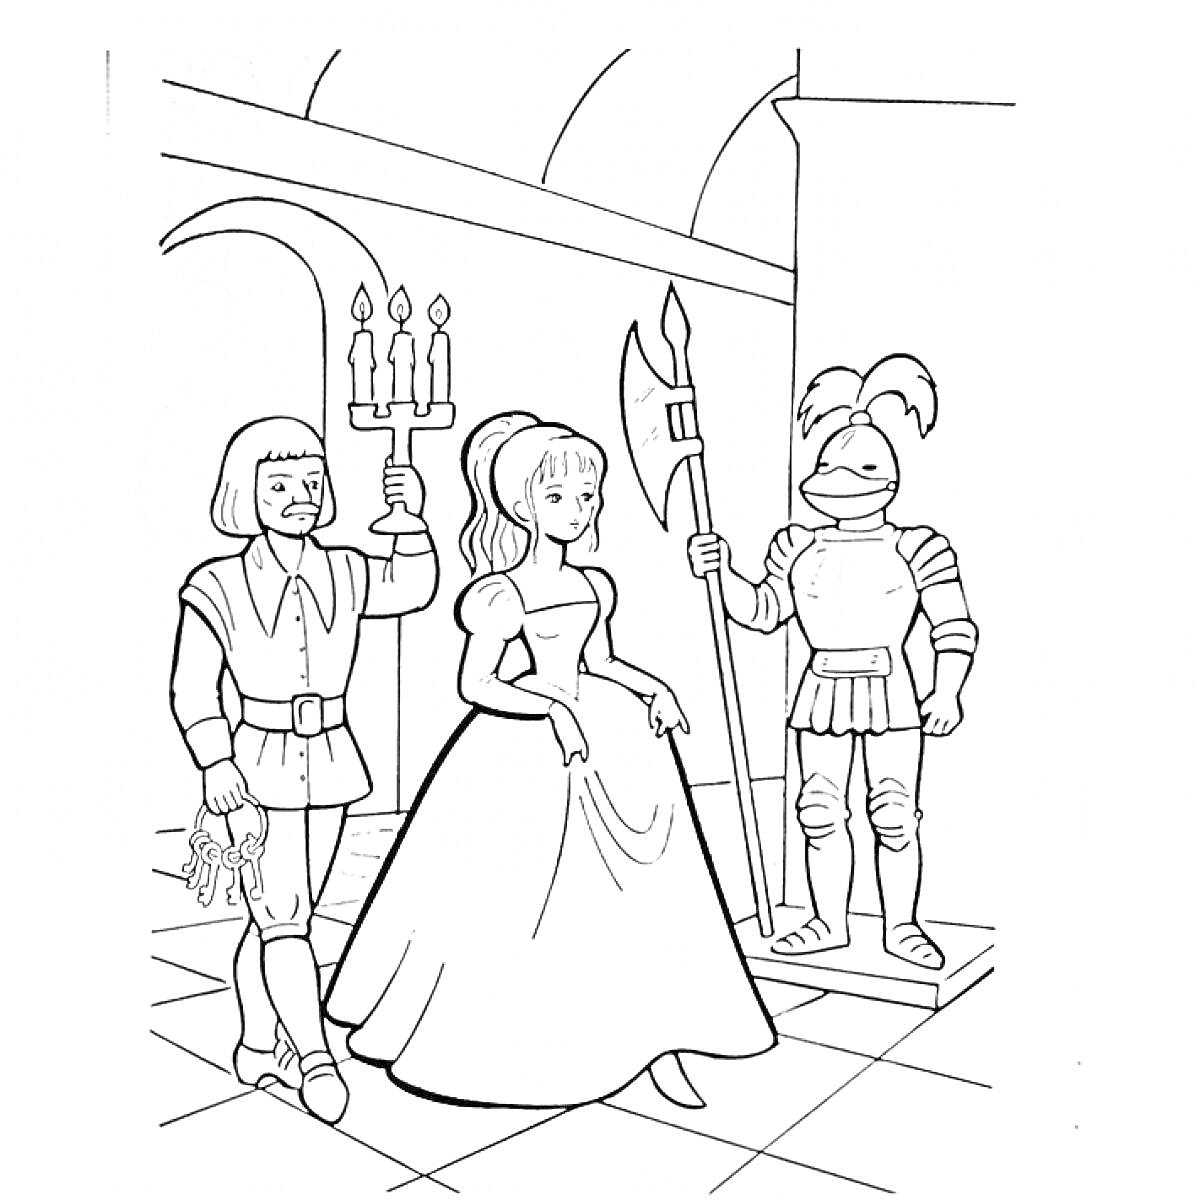 Принцесса среди рыцаря и стражника с канделябром в замке